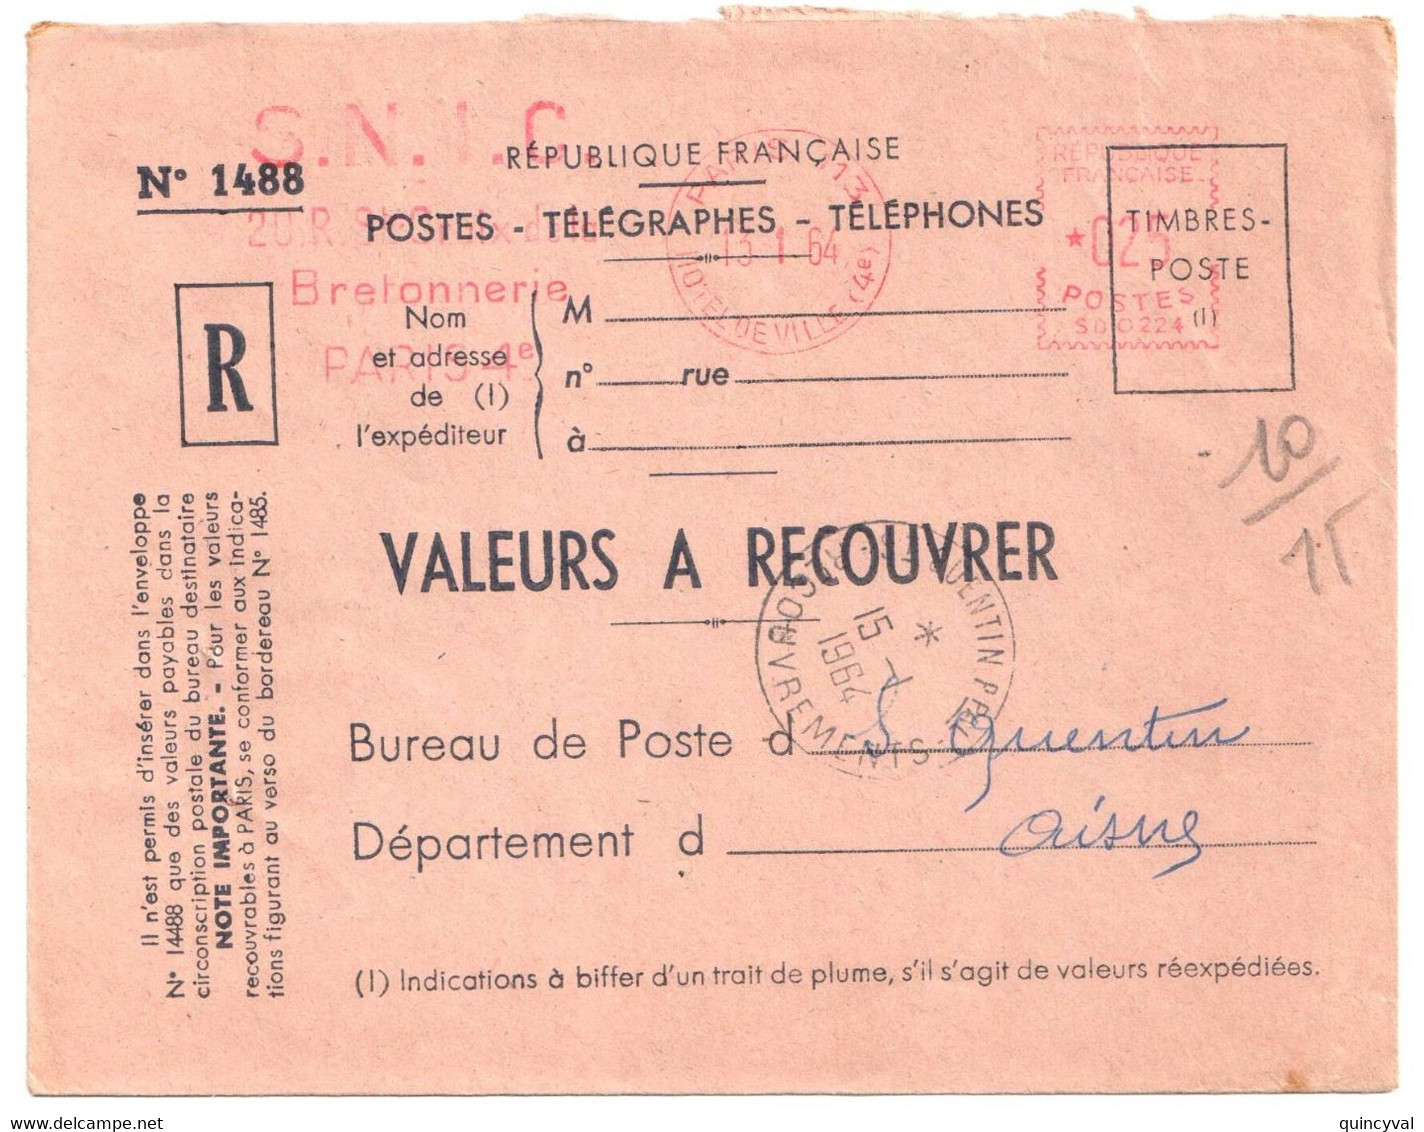 PARIS 113 Valeurs à Recouvrer Env 1488 Ob 13 1 1964 EMA 25c SD0224 Dest St QUENTIN Ppal RECOUVREMENTS   Aisne - EMA (Printer Machine)